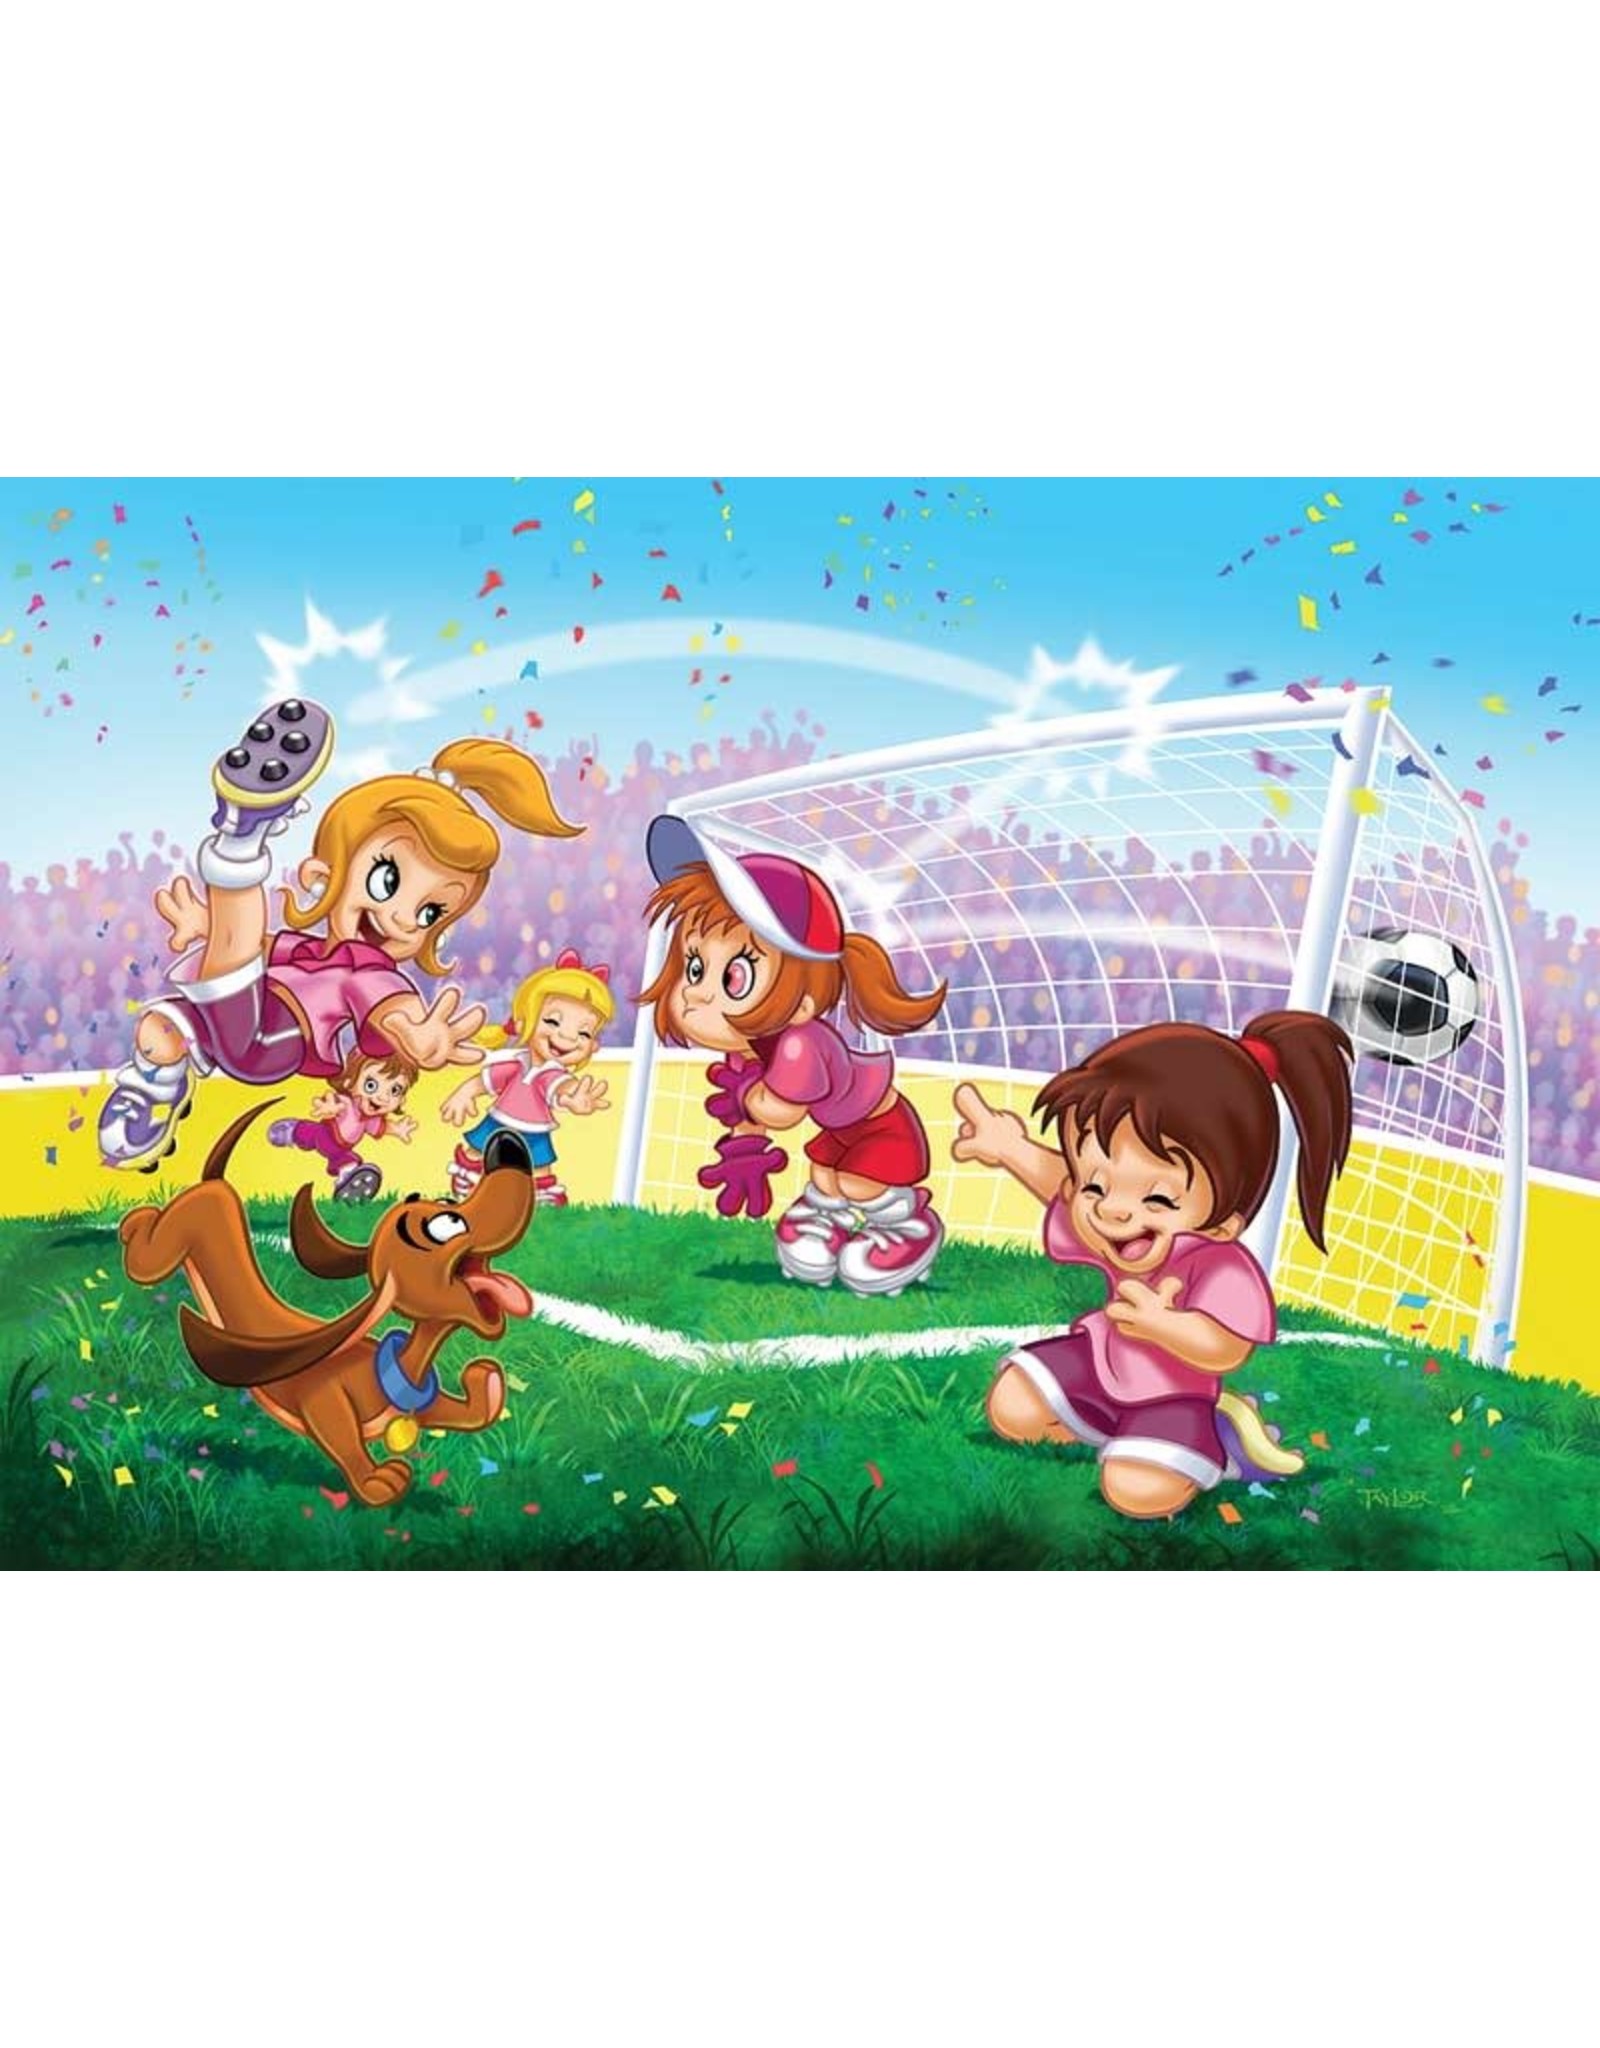 Soccer - Go Girls Go! 100 pc